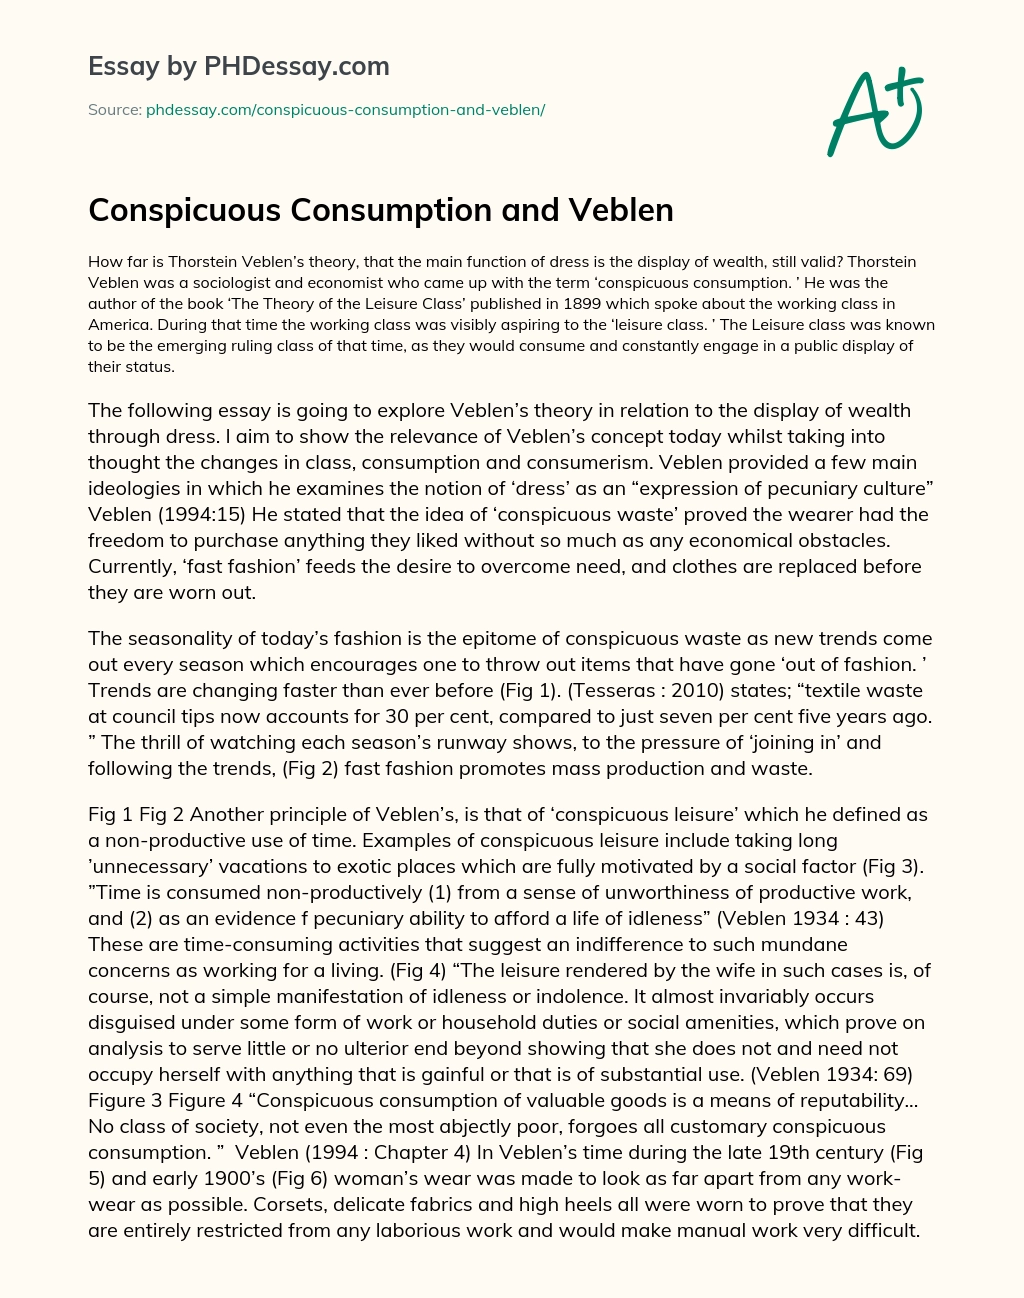 Conspicuous Consumption and Veblen essay